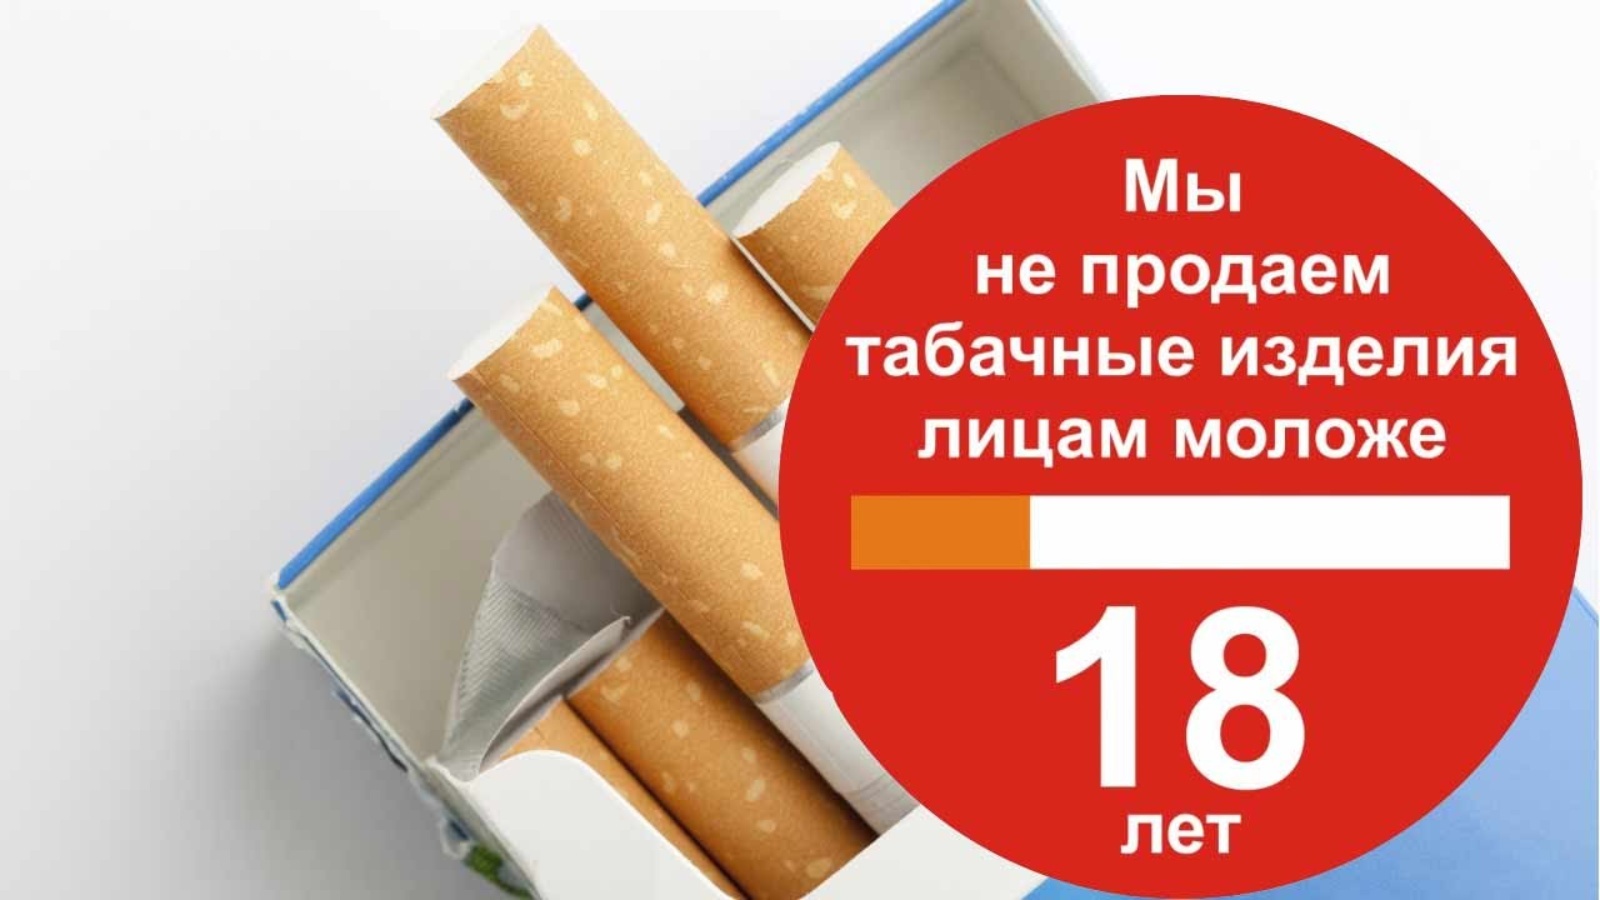 Увеличены штрафы за реализацию несовершеннолетним табачной и никотинсодержащей продукции.